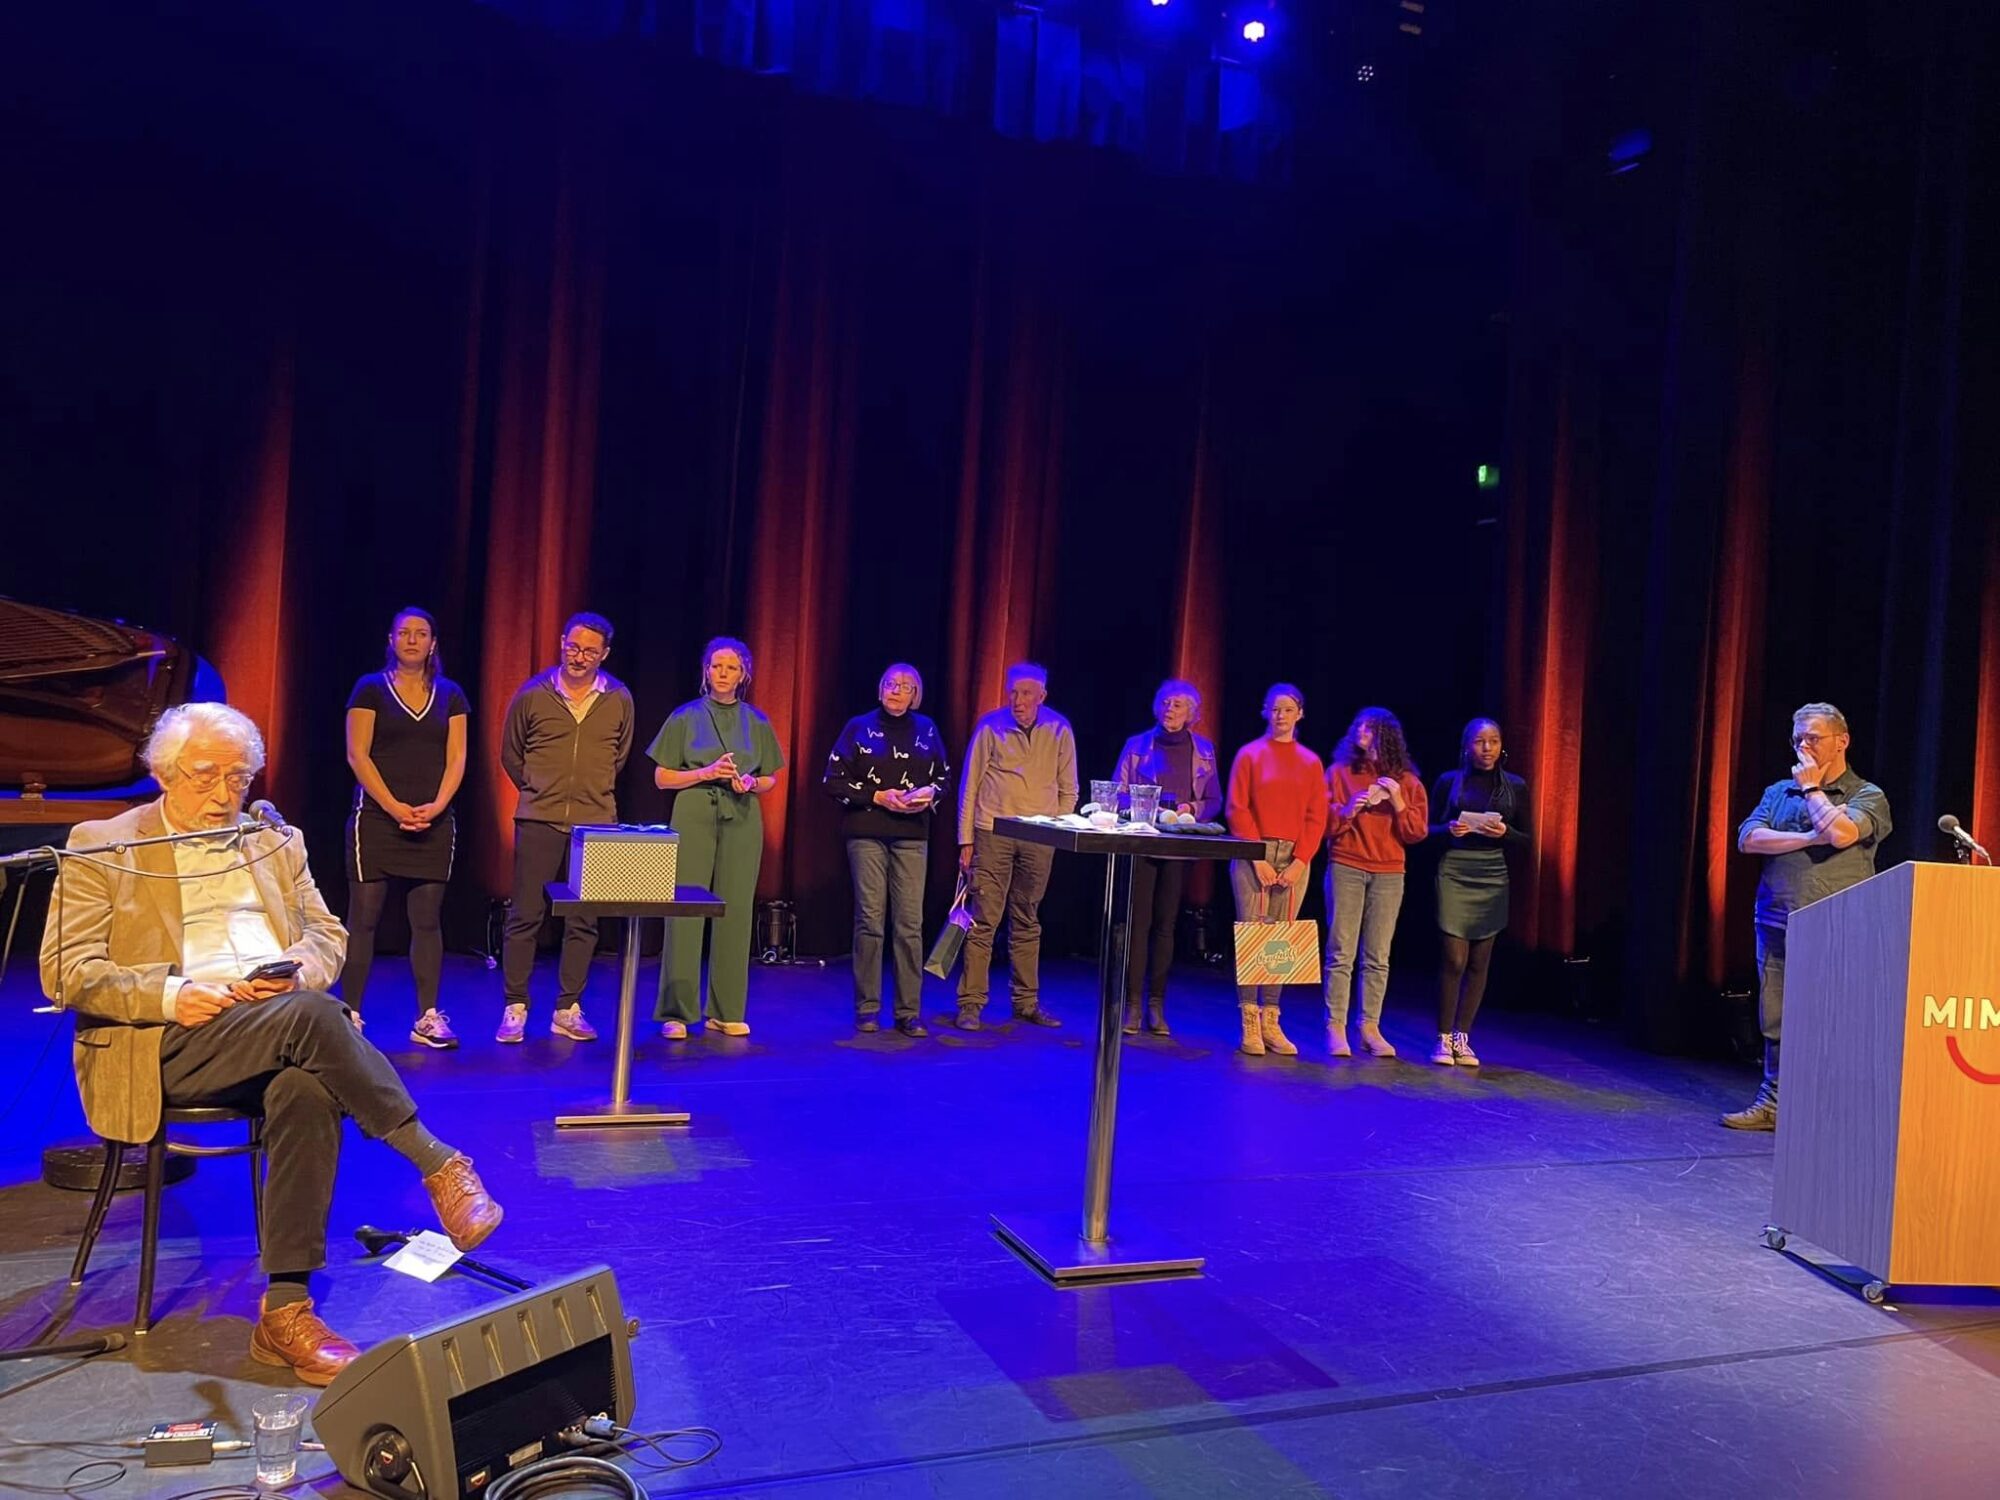 Gedichtenwedstrijd voor jong en oud in Deventer